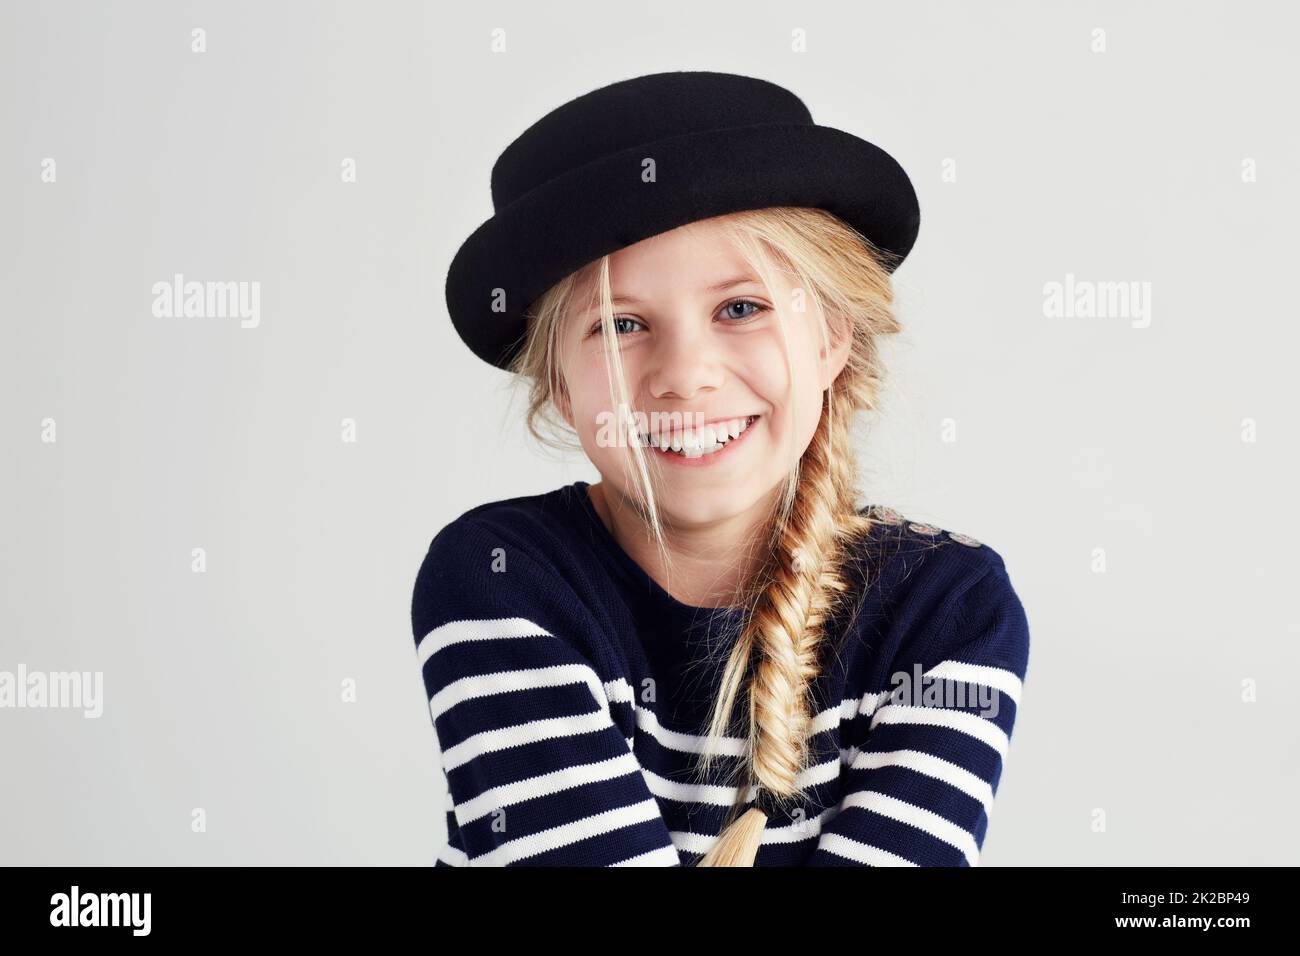 Stile carino e sassoso. Ritratto di una ragazza carina che ti dà un sorriso toothy. Foto Stock